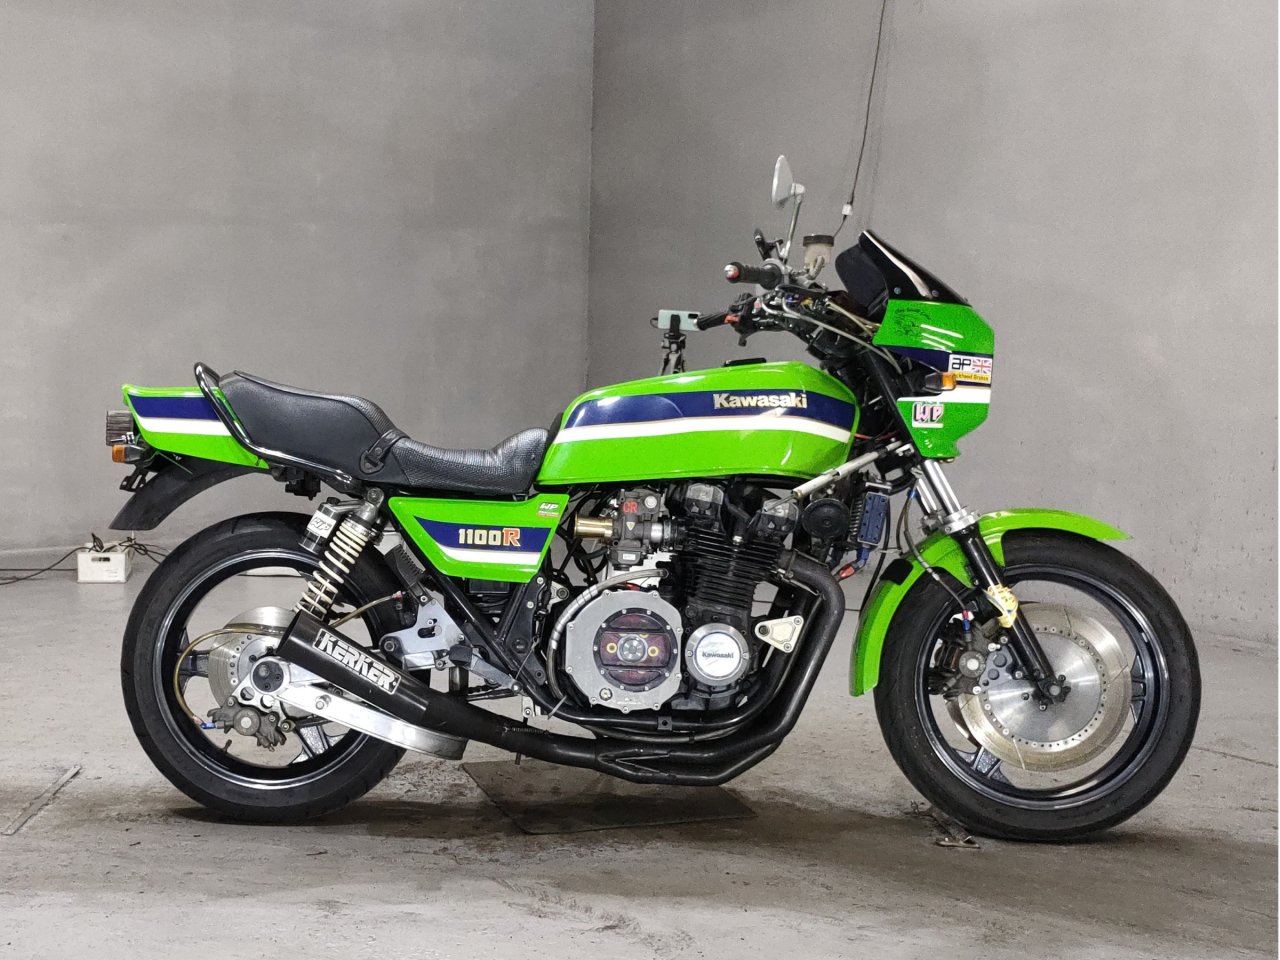 Kawasaki Z1100R - Adamoto - Motorcycles from Japan